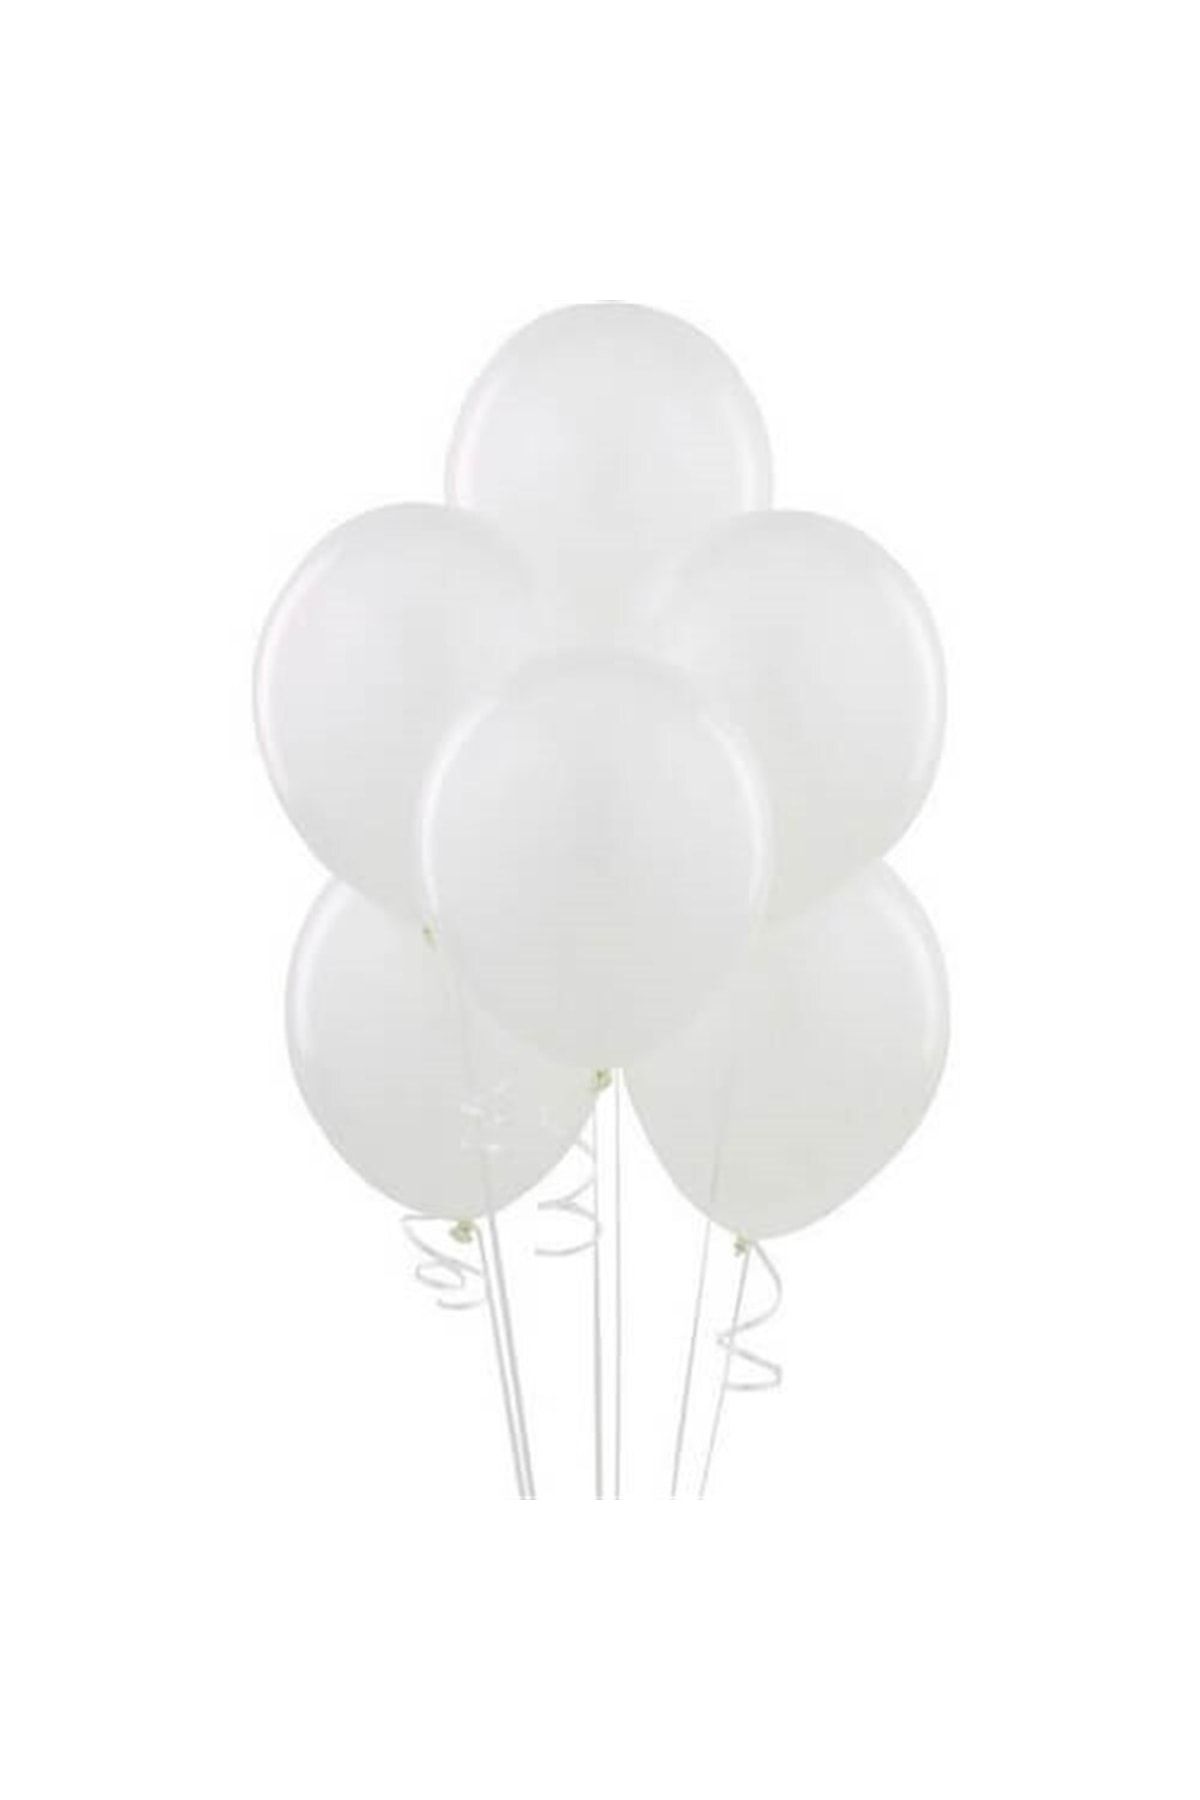 ECE PARTİ Metalik Balon Beyaz 10 'lu Paket